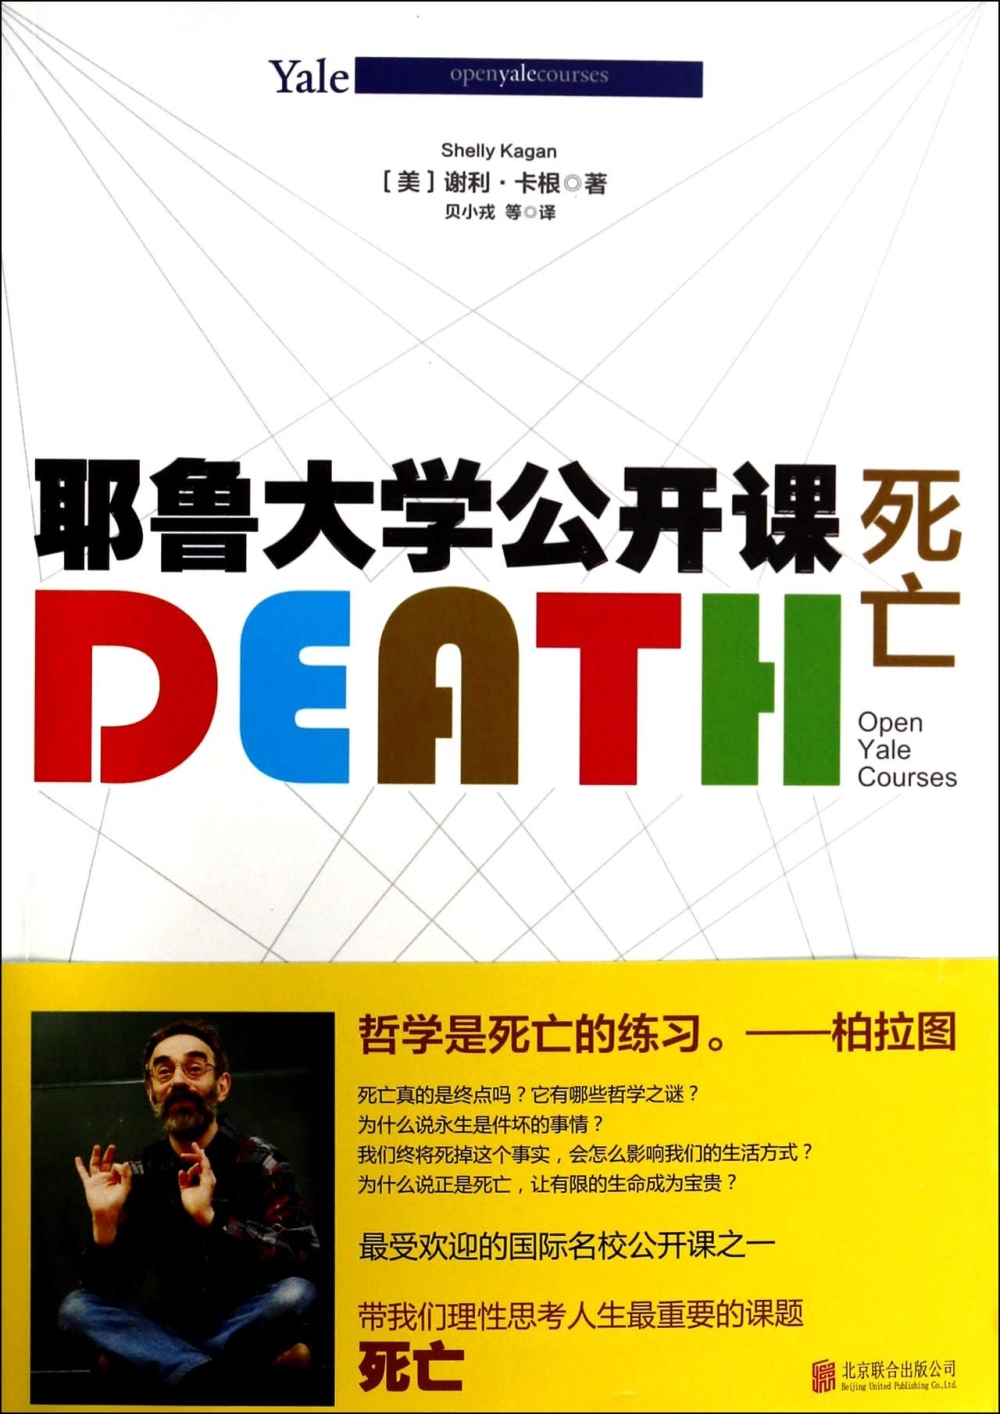 耶魯大學公開課：死亡